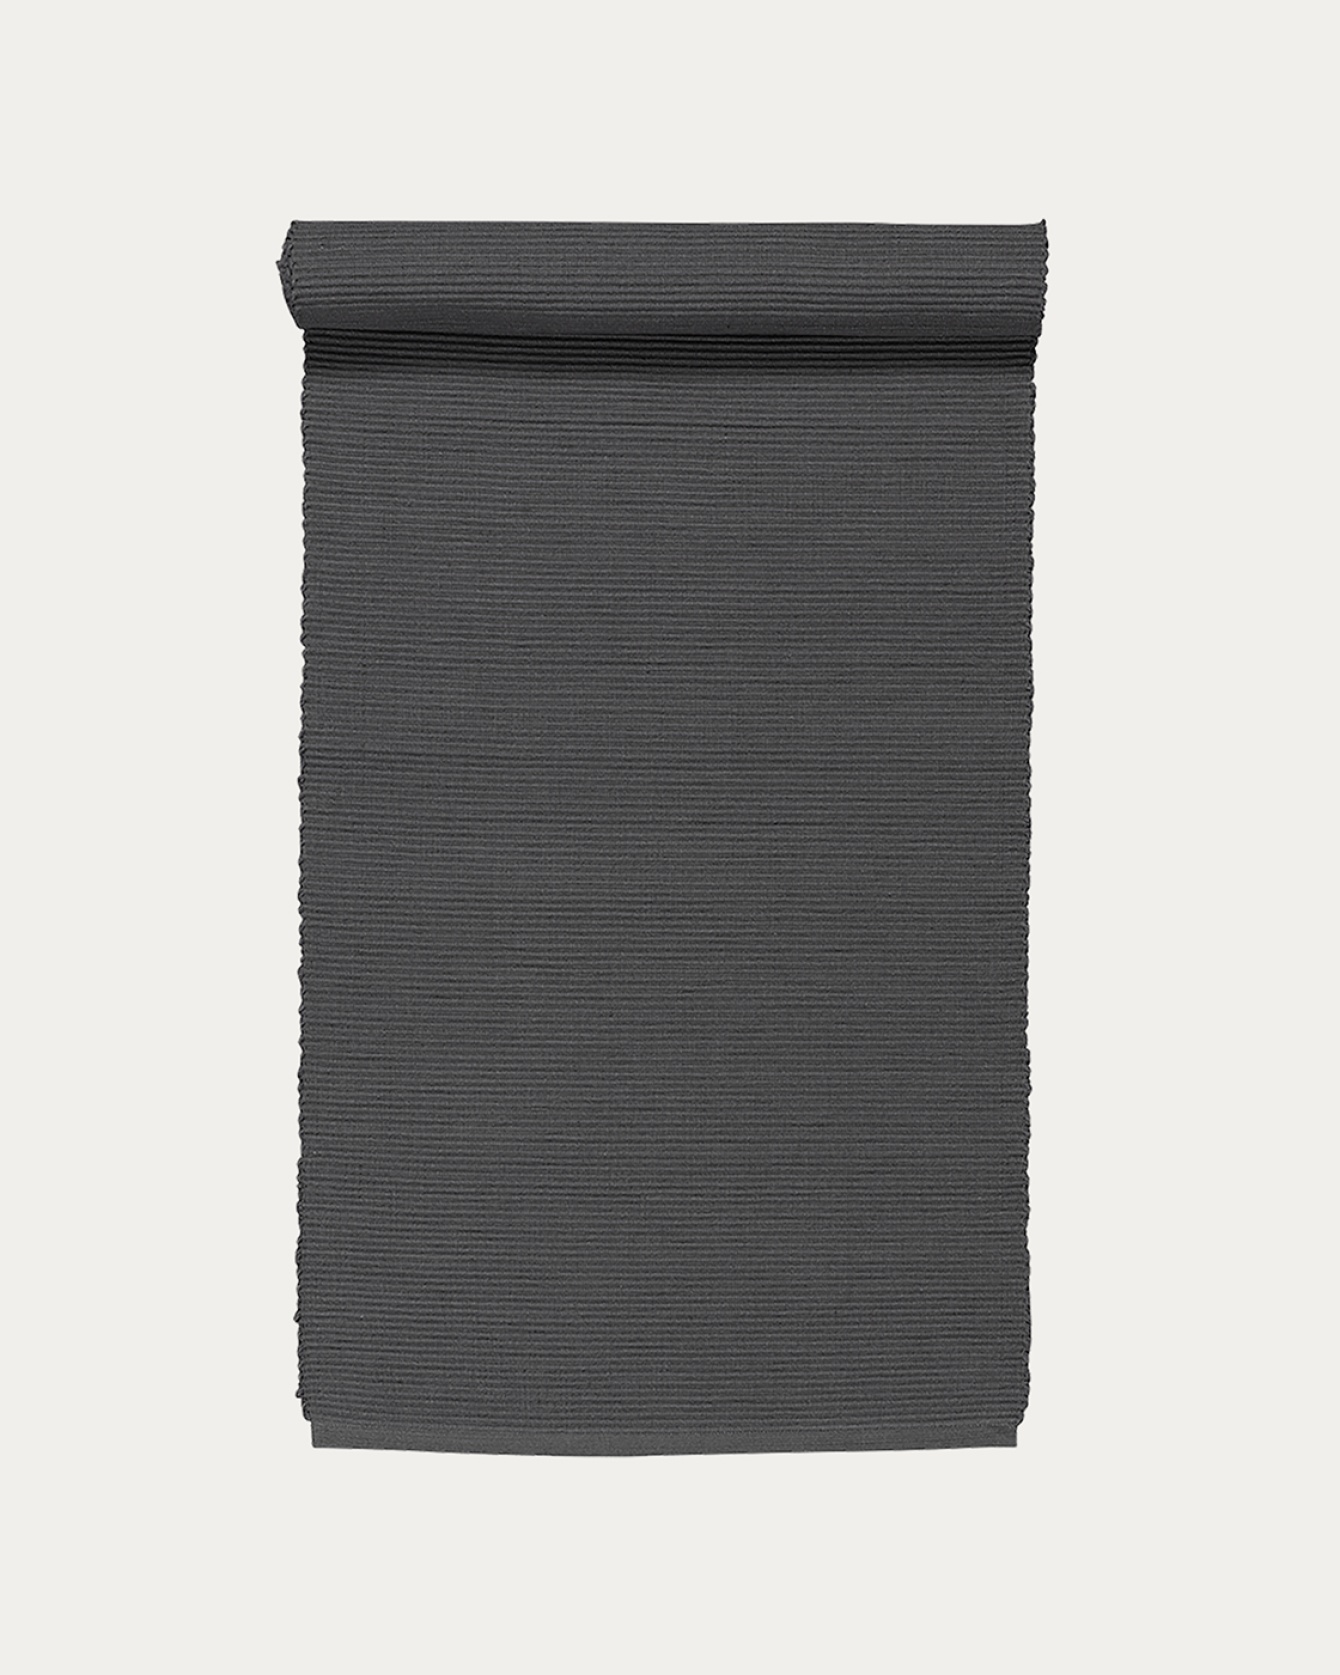 Produktbild granitgrau UNI Tischläufer aus weicher Baumwolle in Rippenqualität von LINUM DESIGN. Größe 45x150 cm.